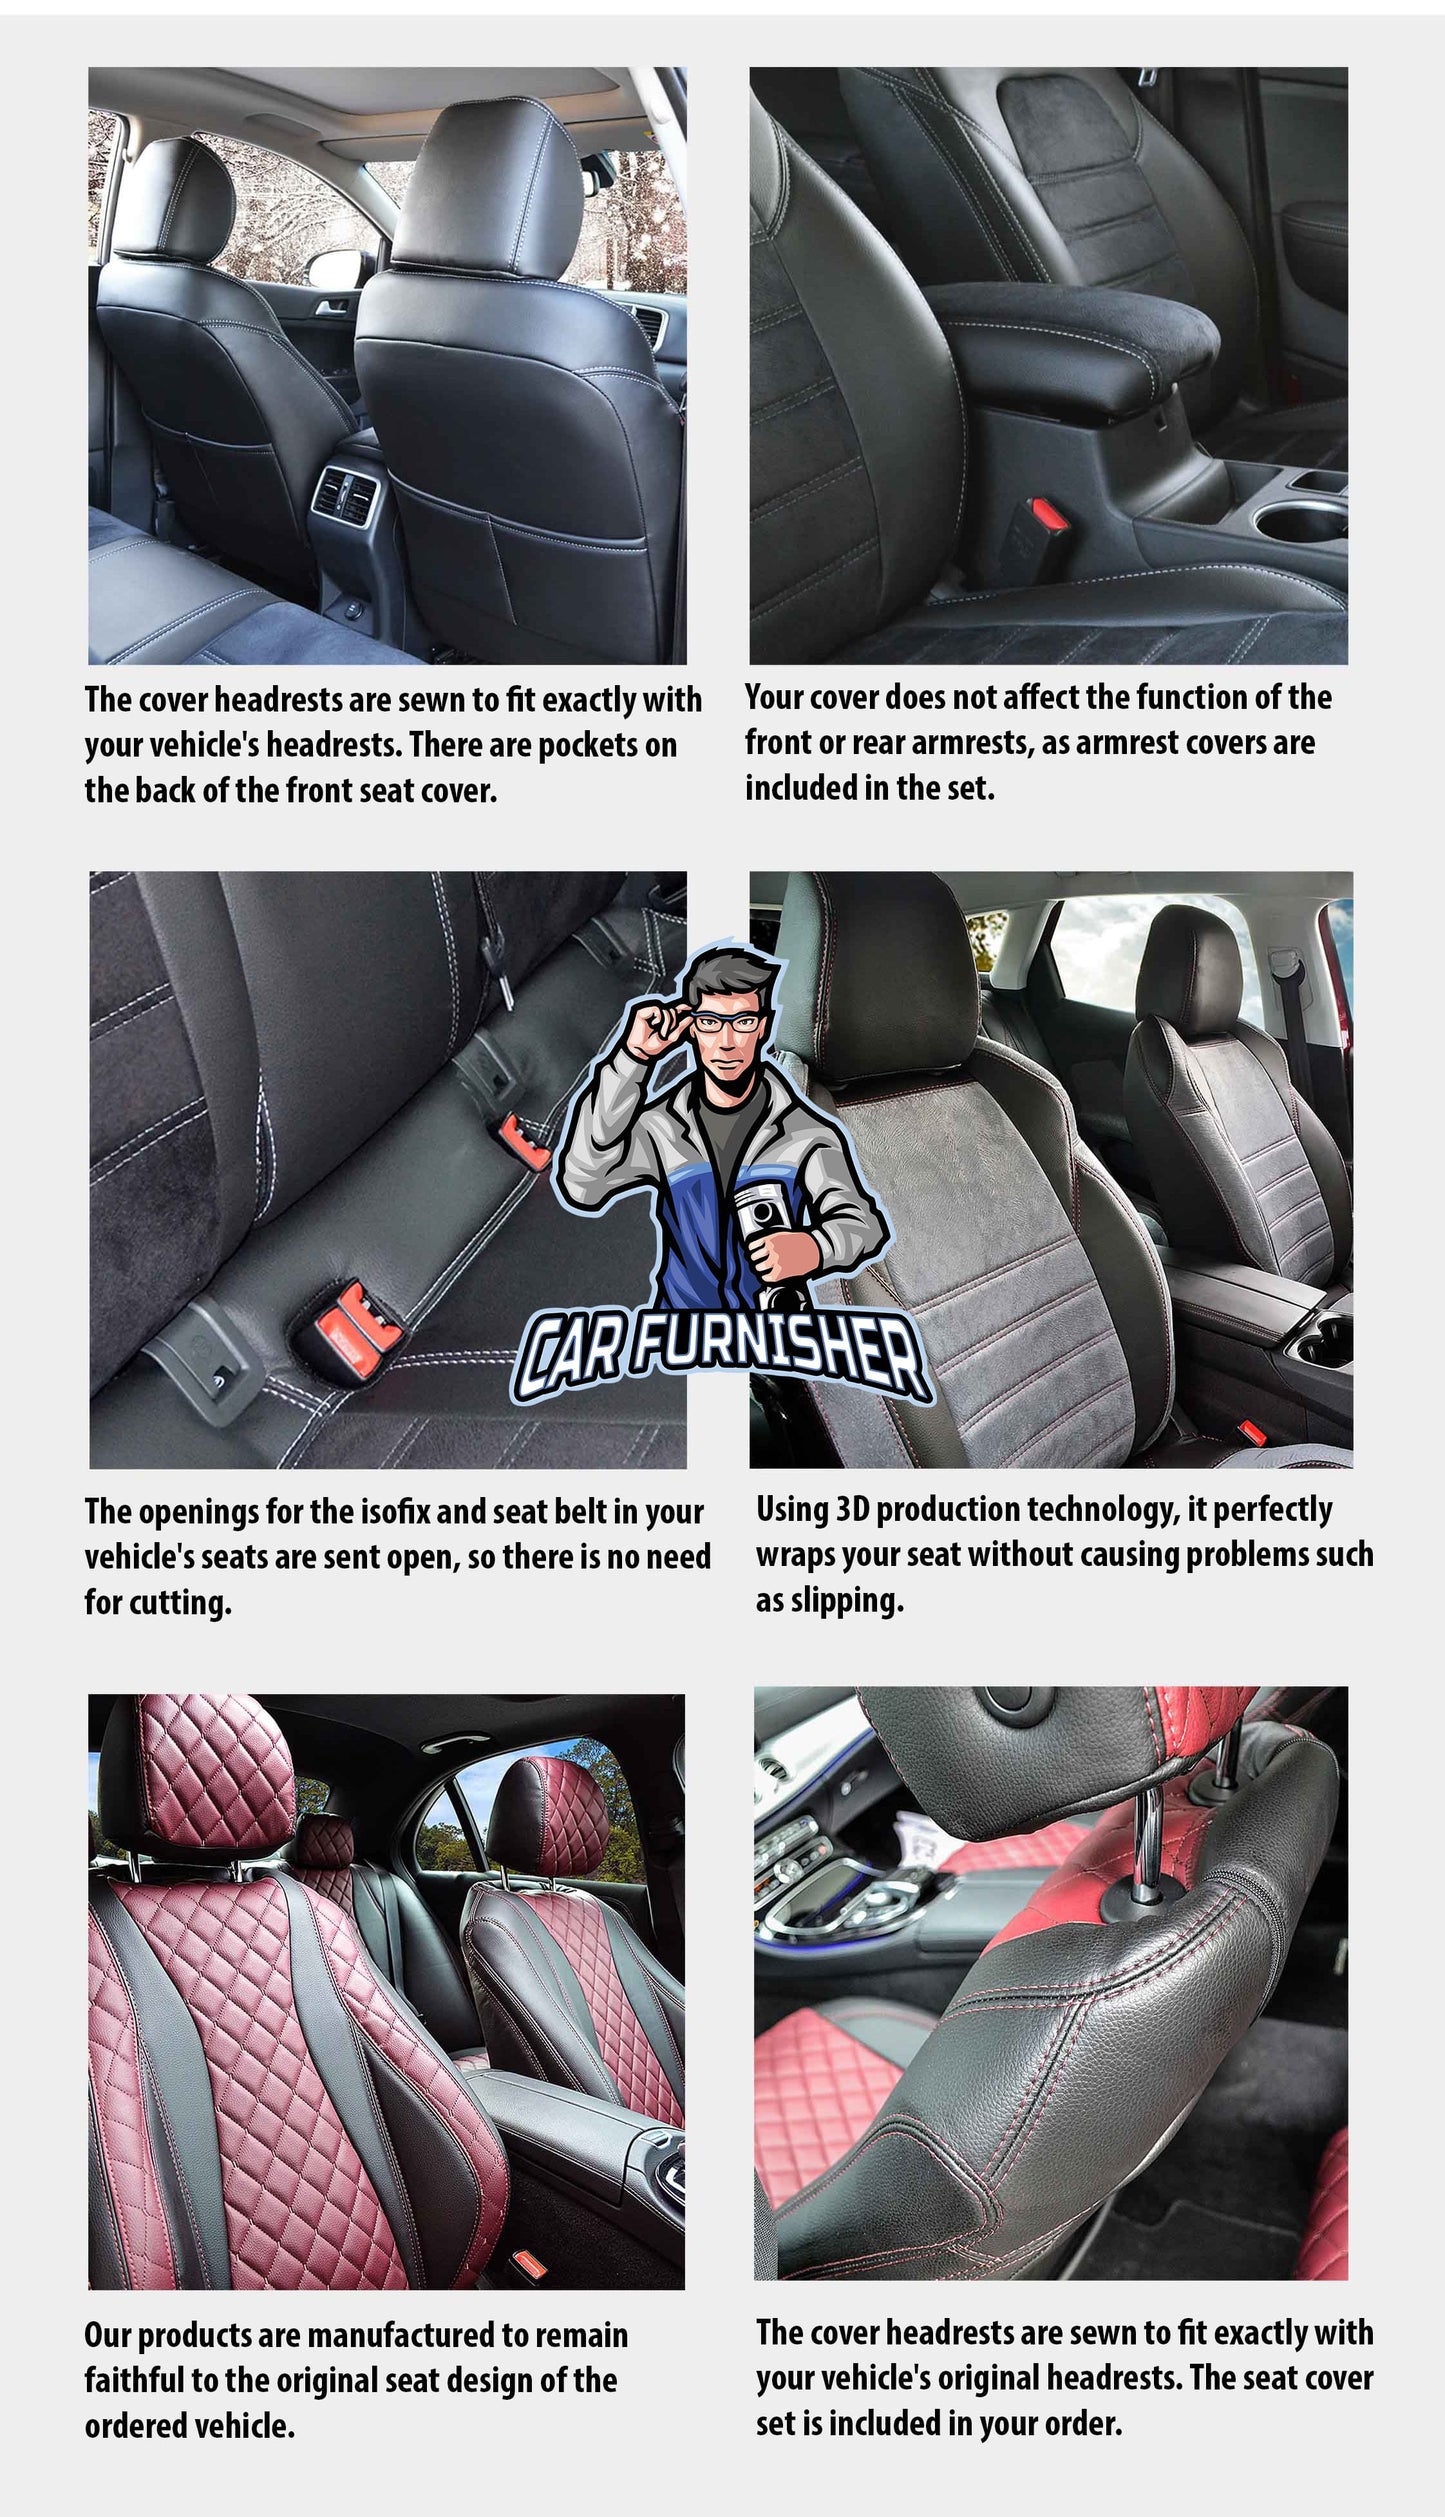 Daihatsu Terios Seat Covers Original Jacquard Design Smoked Black Jacquard Fabric